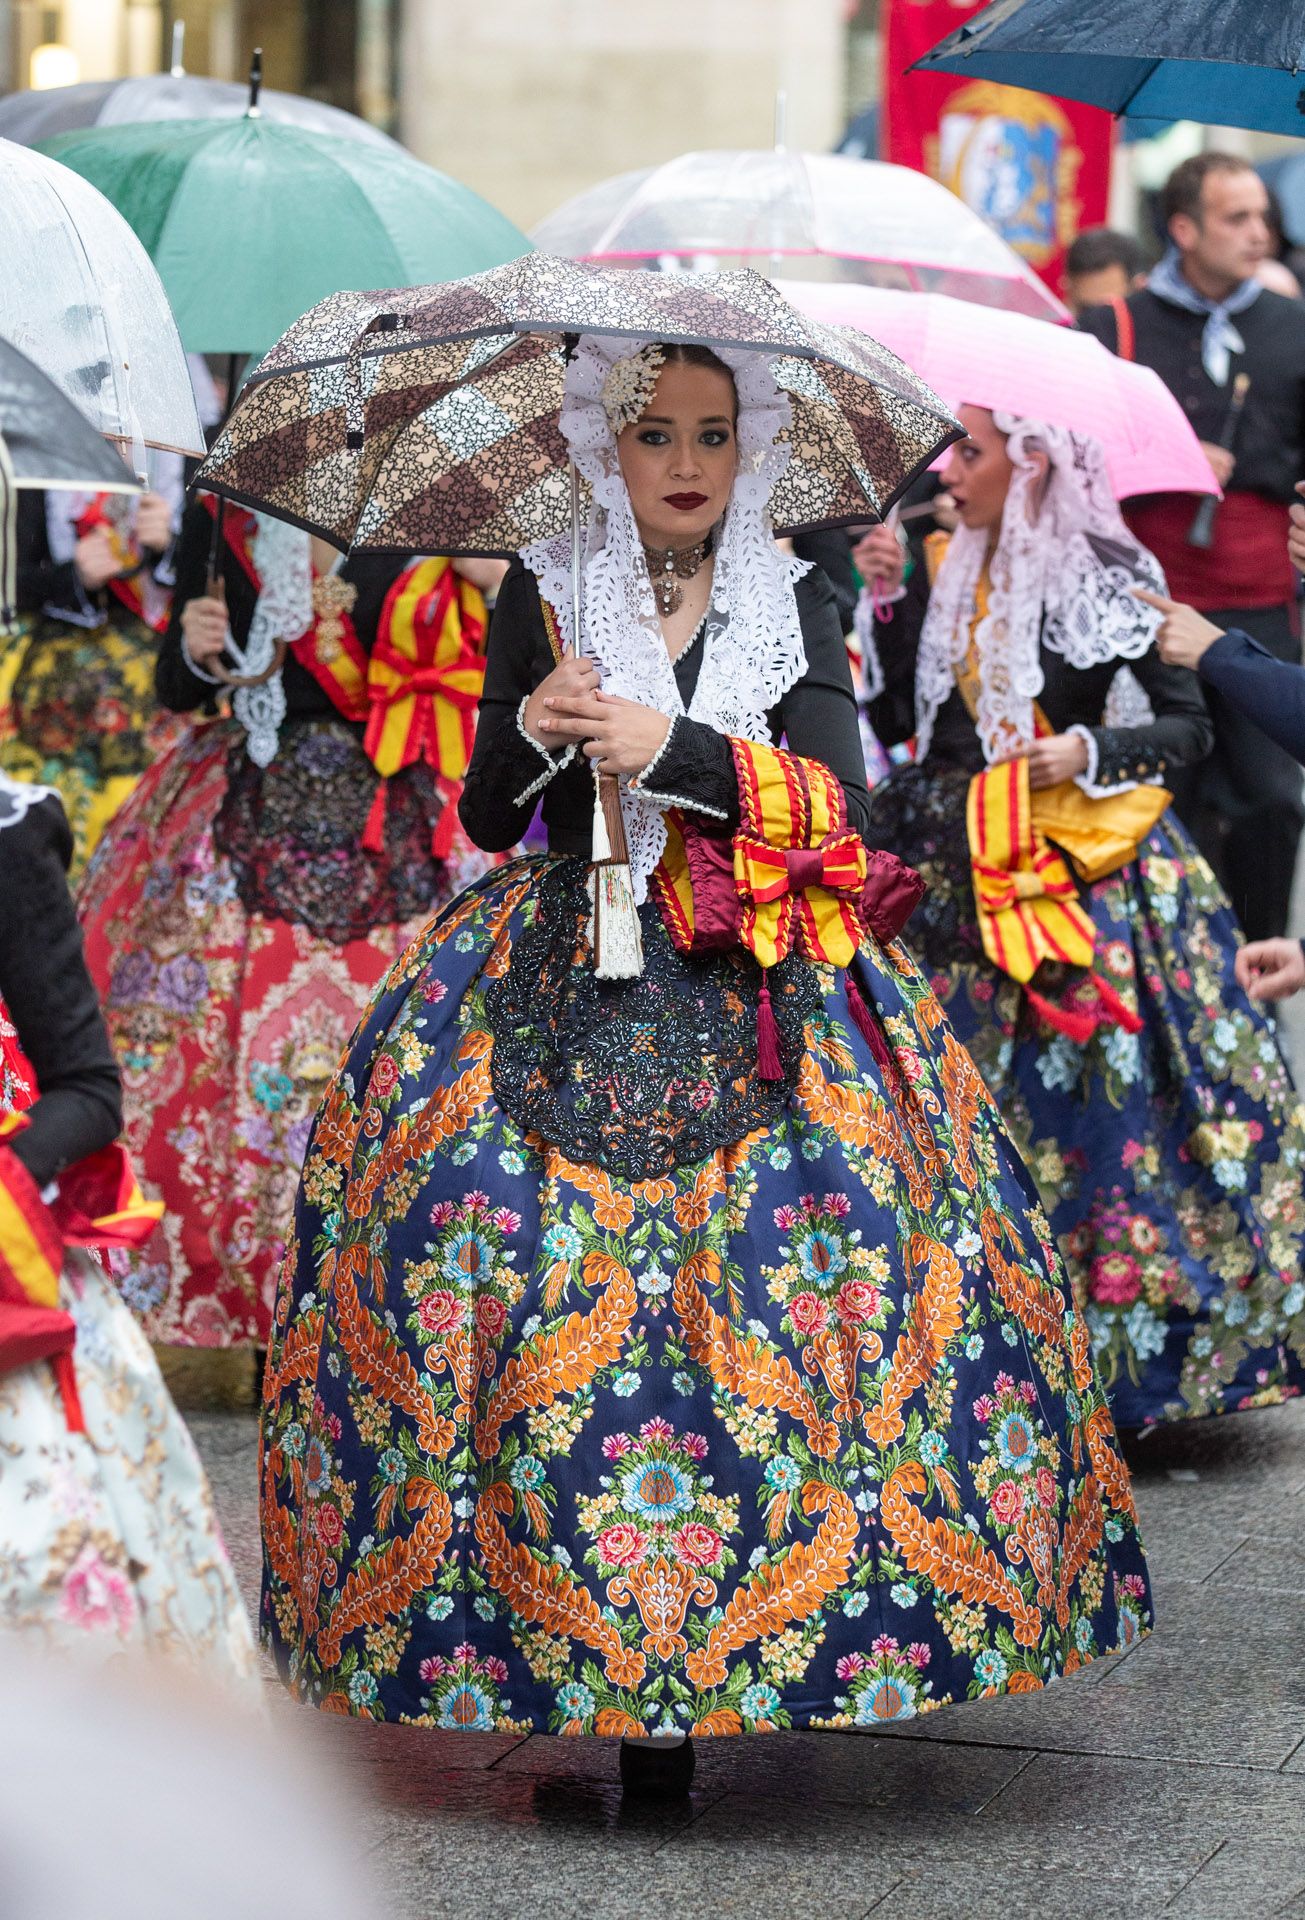 Las Hogueras se promocionan bajo la lluvia en Zaragoza